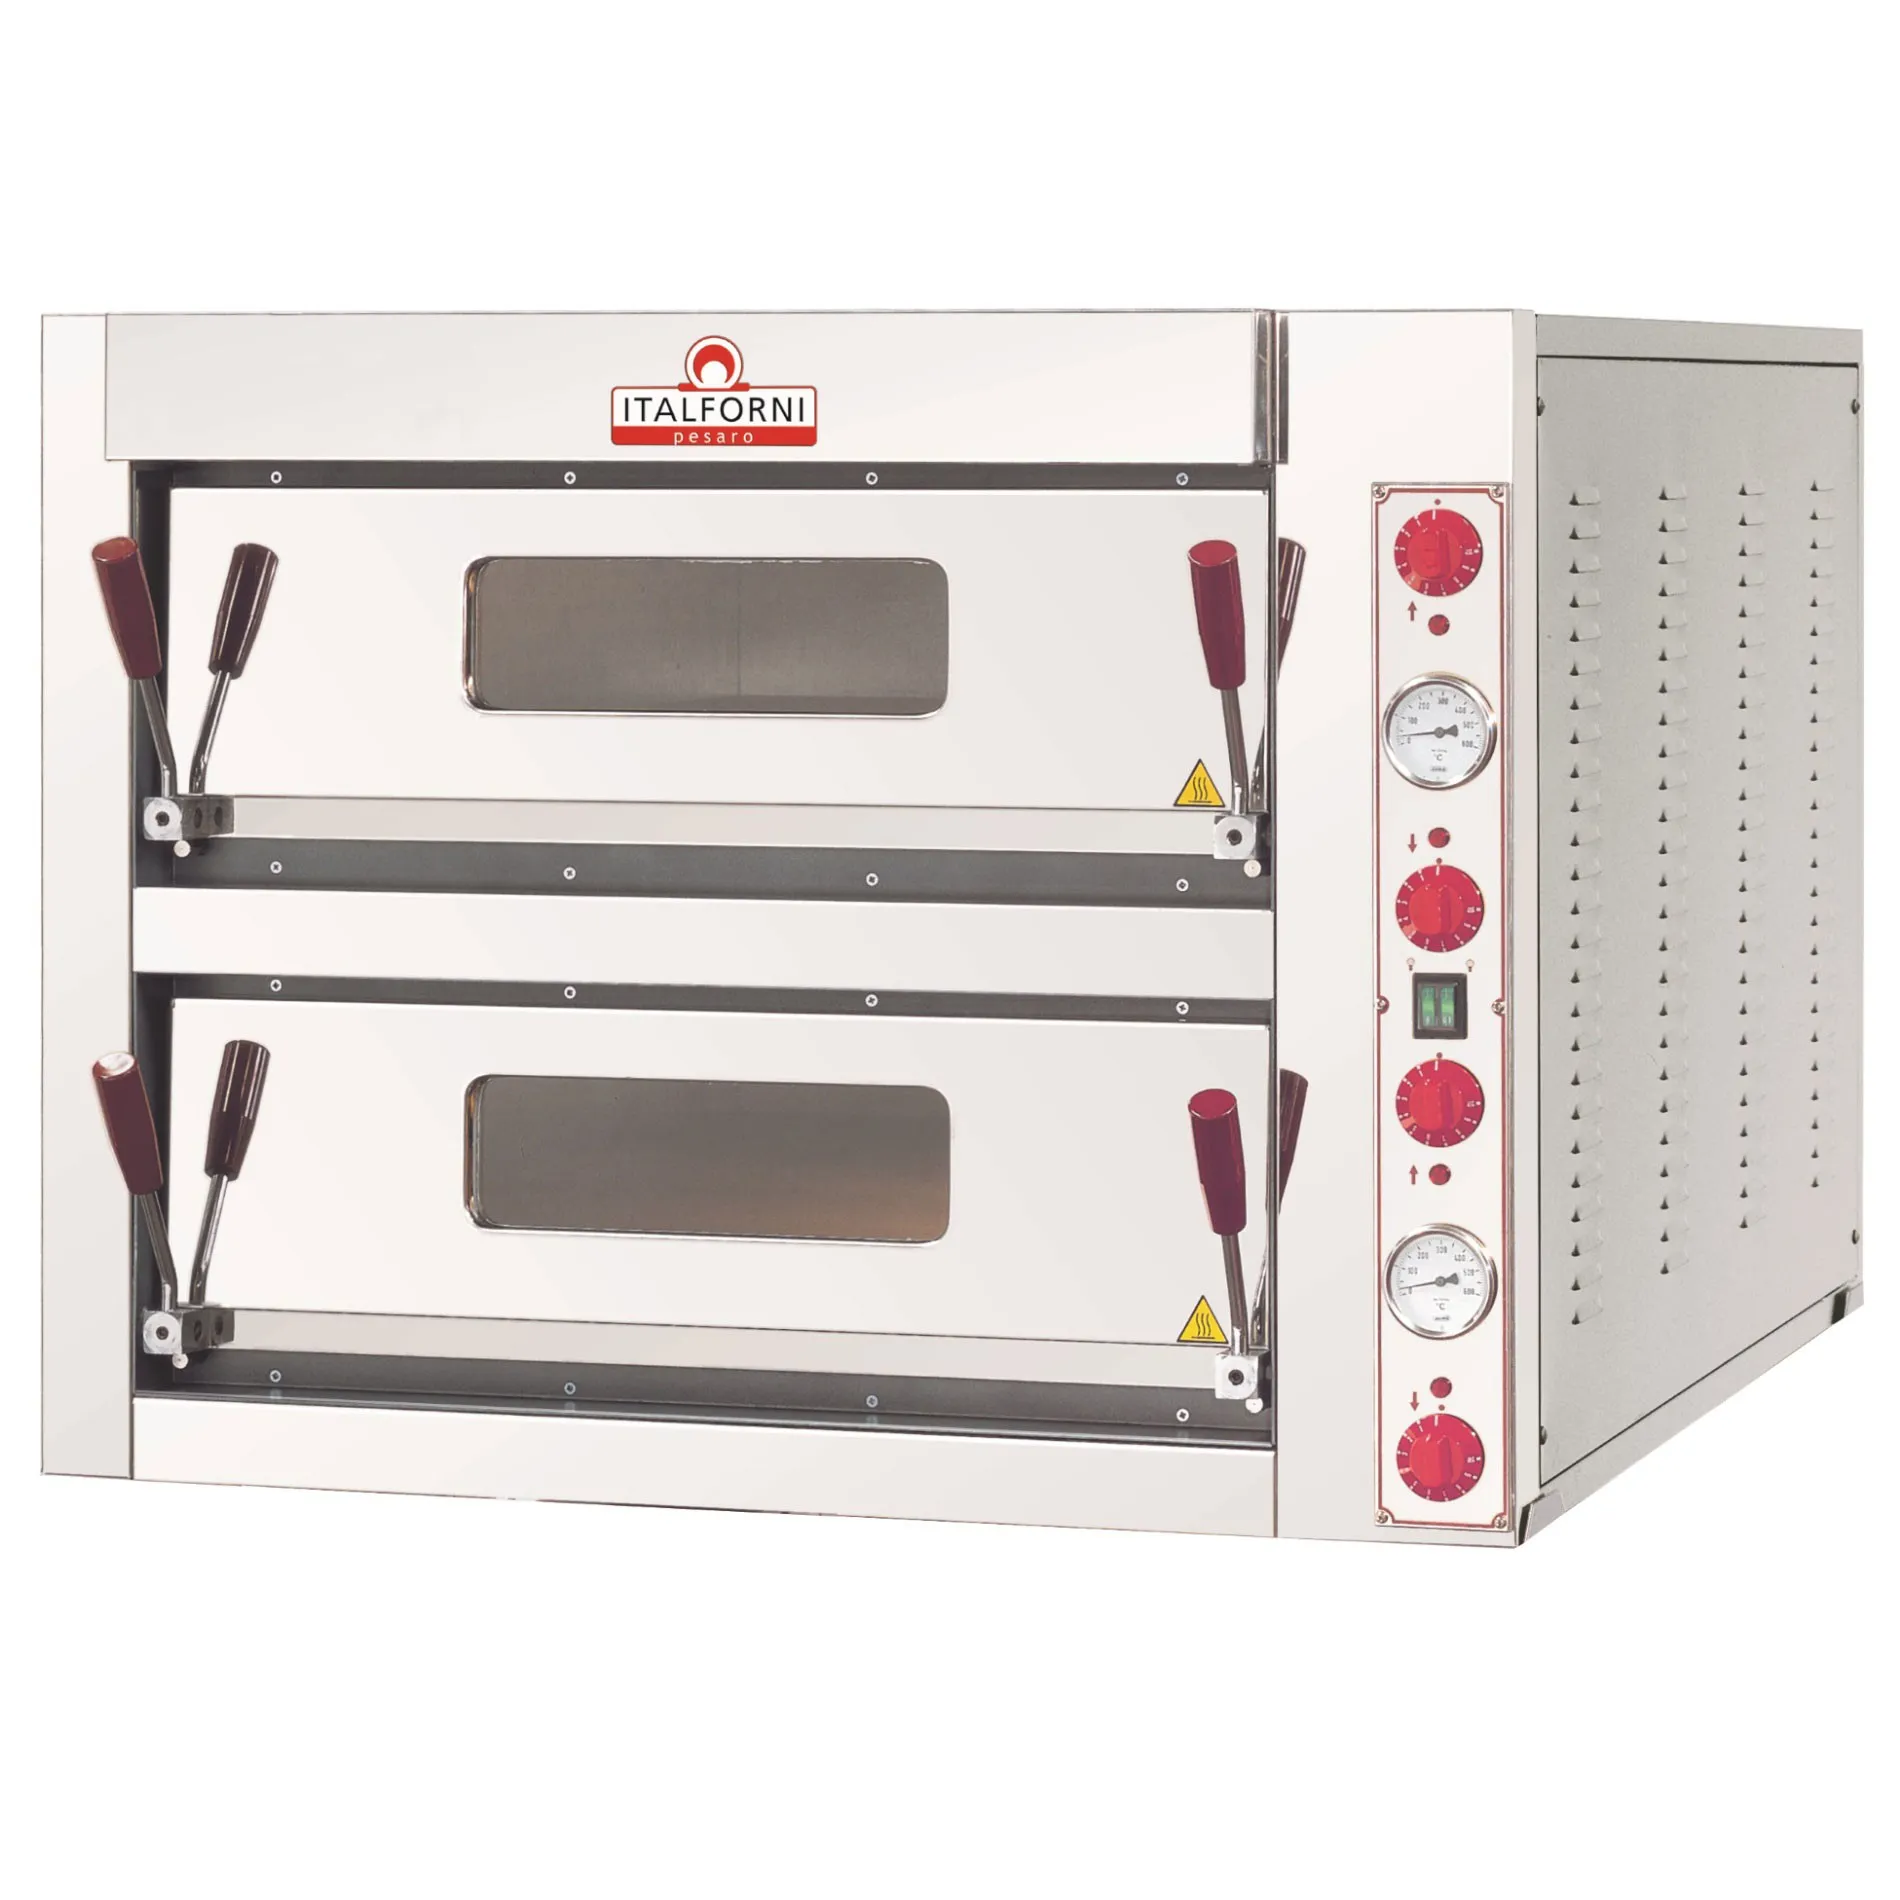 Italforni TKA2 Twin deck electric pizza oven